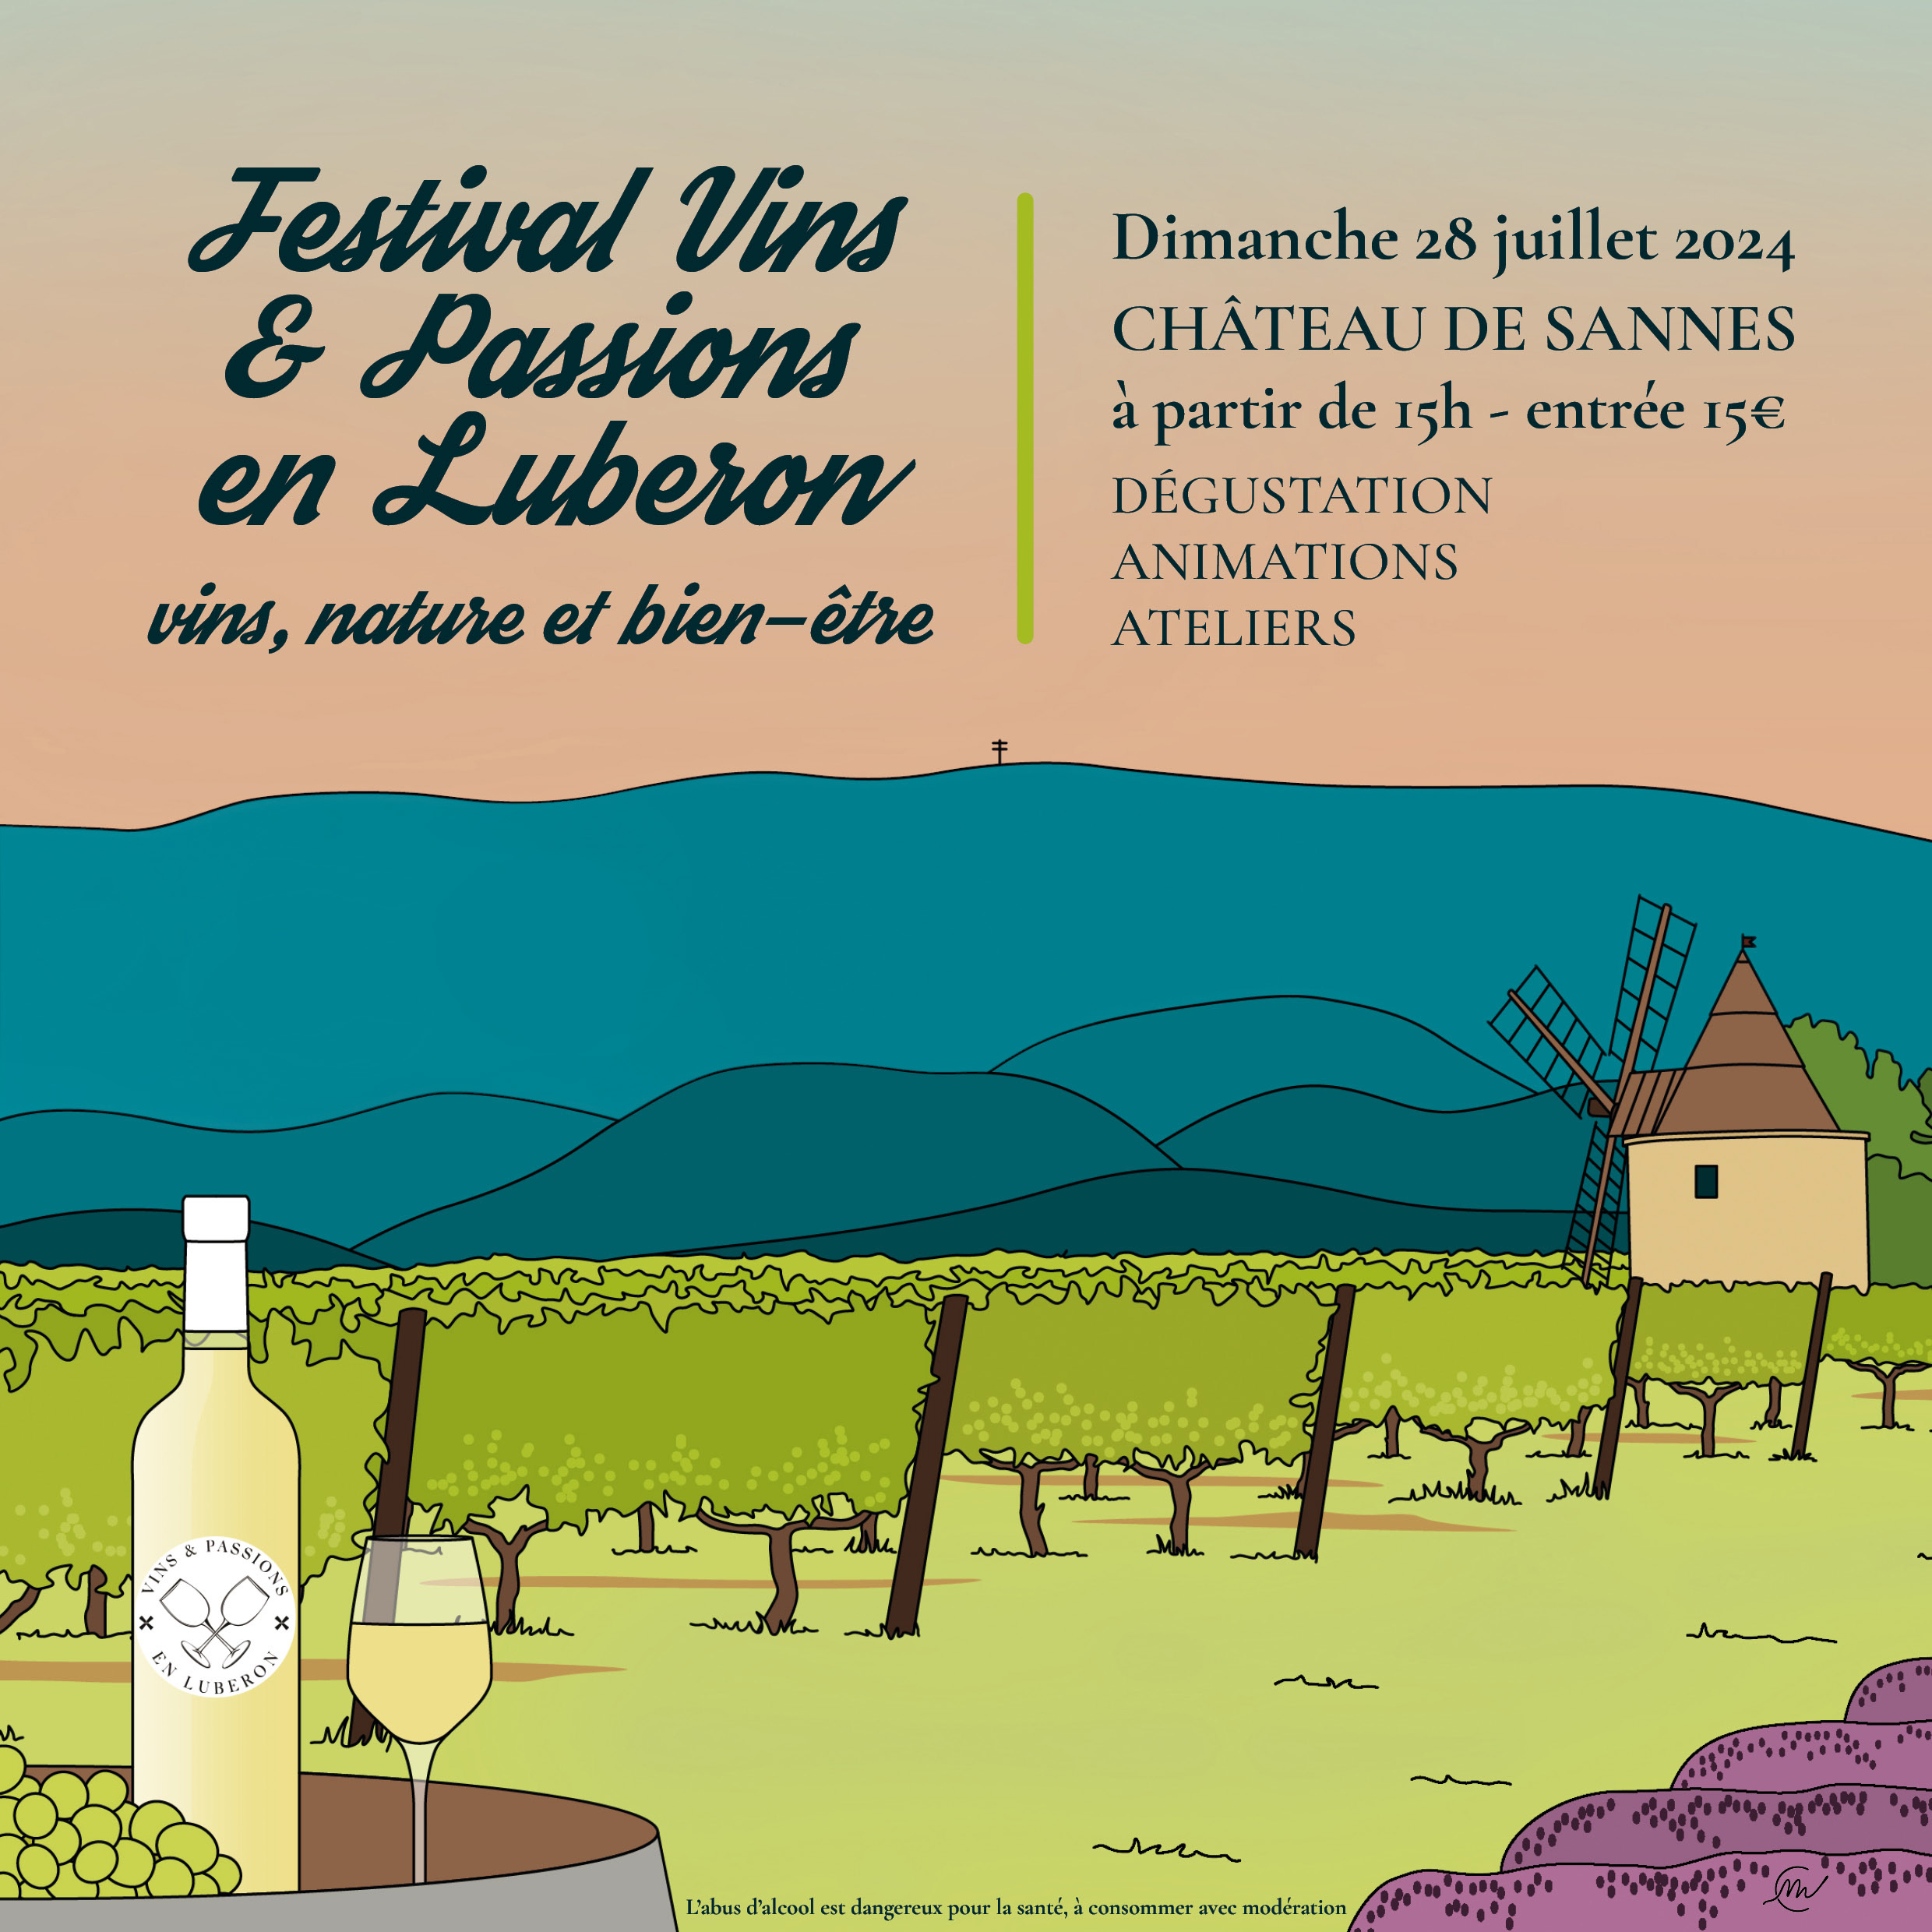 Festival Vins et Passions en Luberon 2024 : vins, nature et bin-^tre dimanche 28 juillet au chateau de sannes